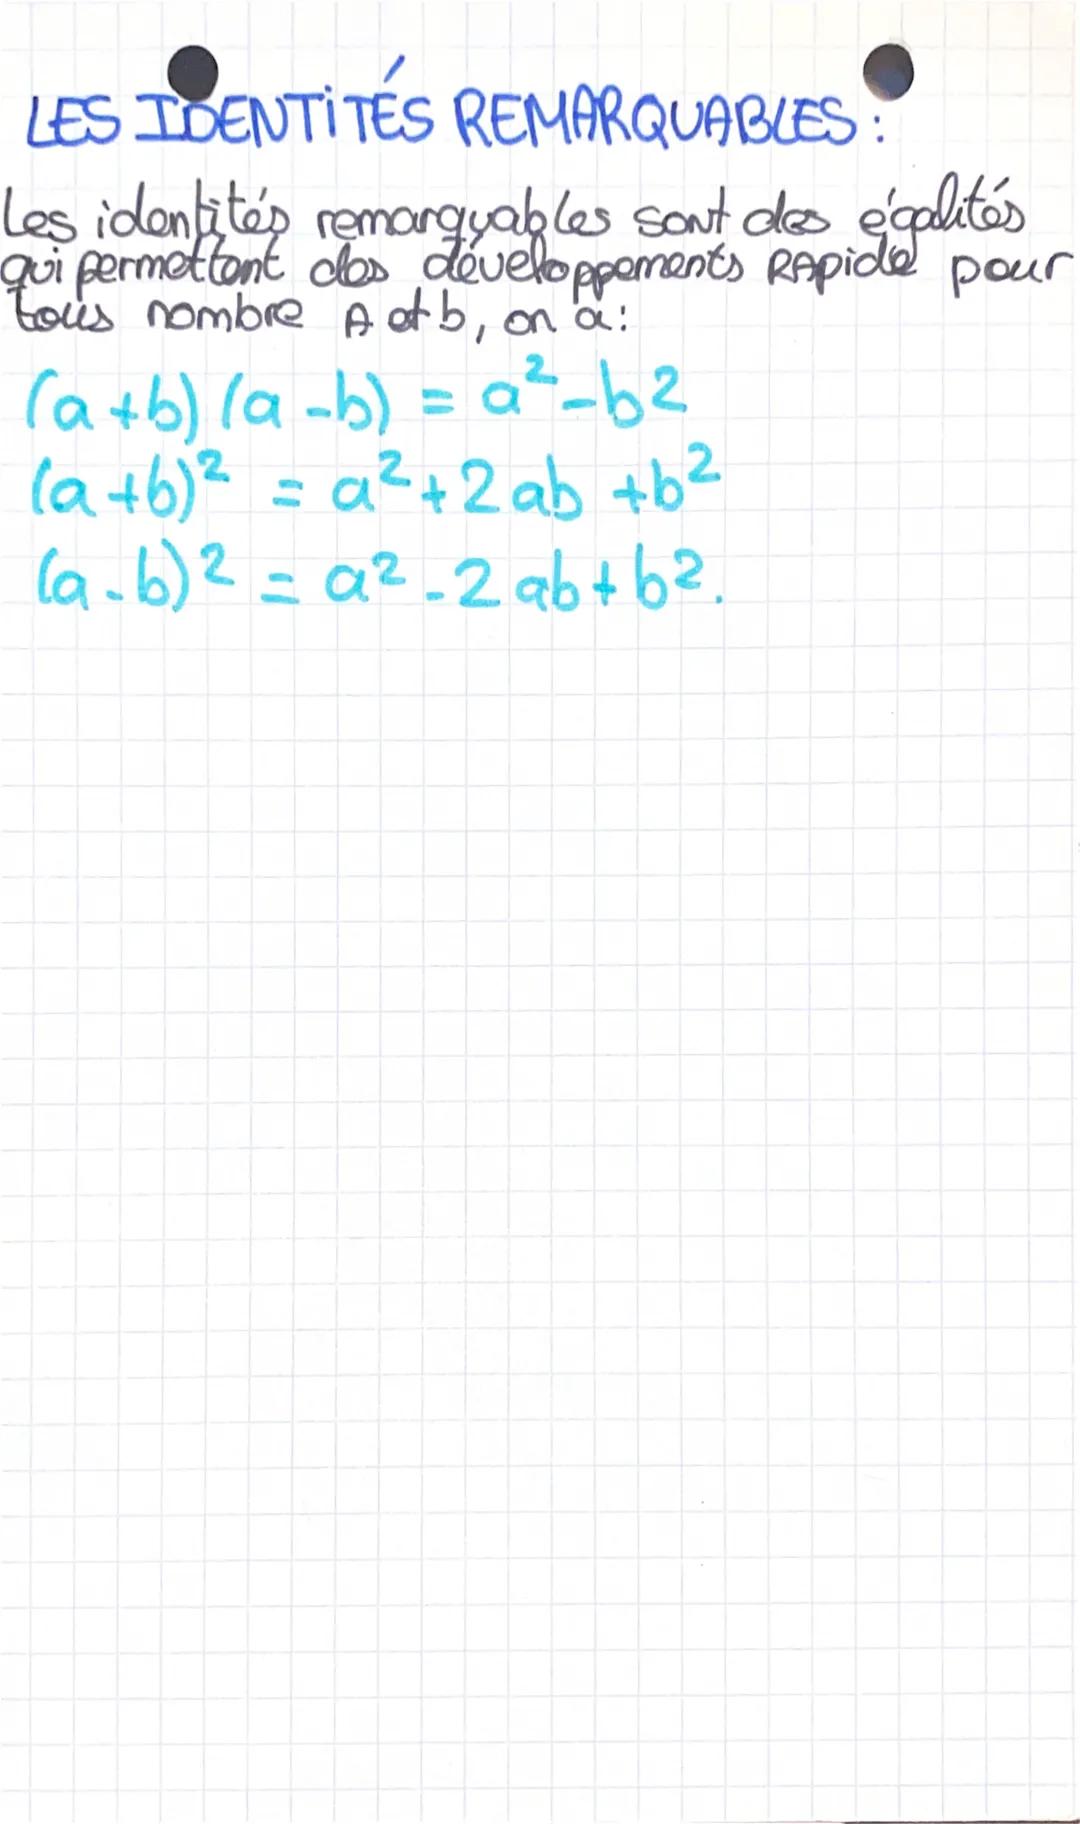 Mathématiques
la distribuiturité e
FORMULE DE DISTRIBUTIVITE:
2
24 x (3+5) = 24x3 +24x5
-Je distribue une multiplication par 24, c'est
La di